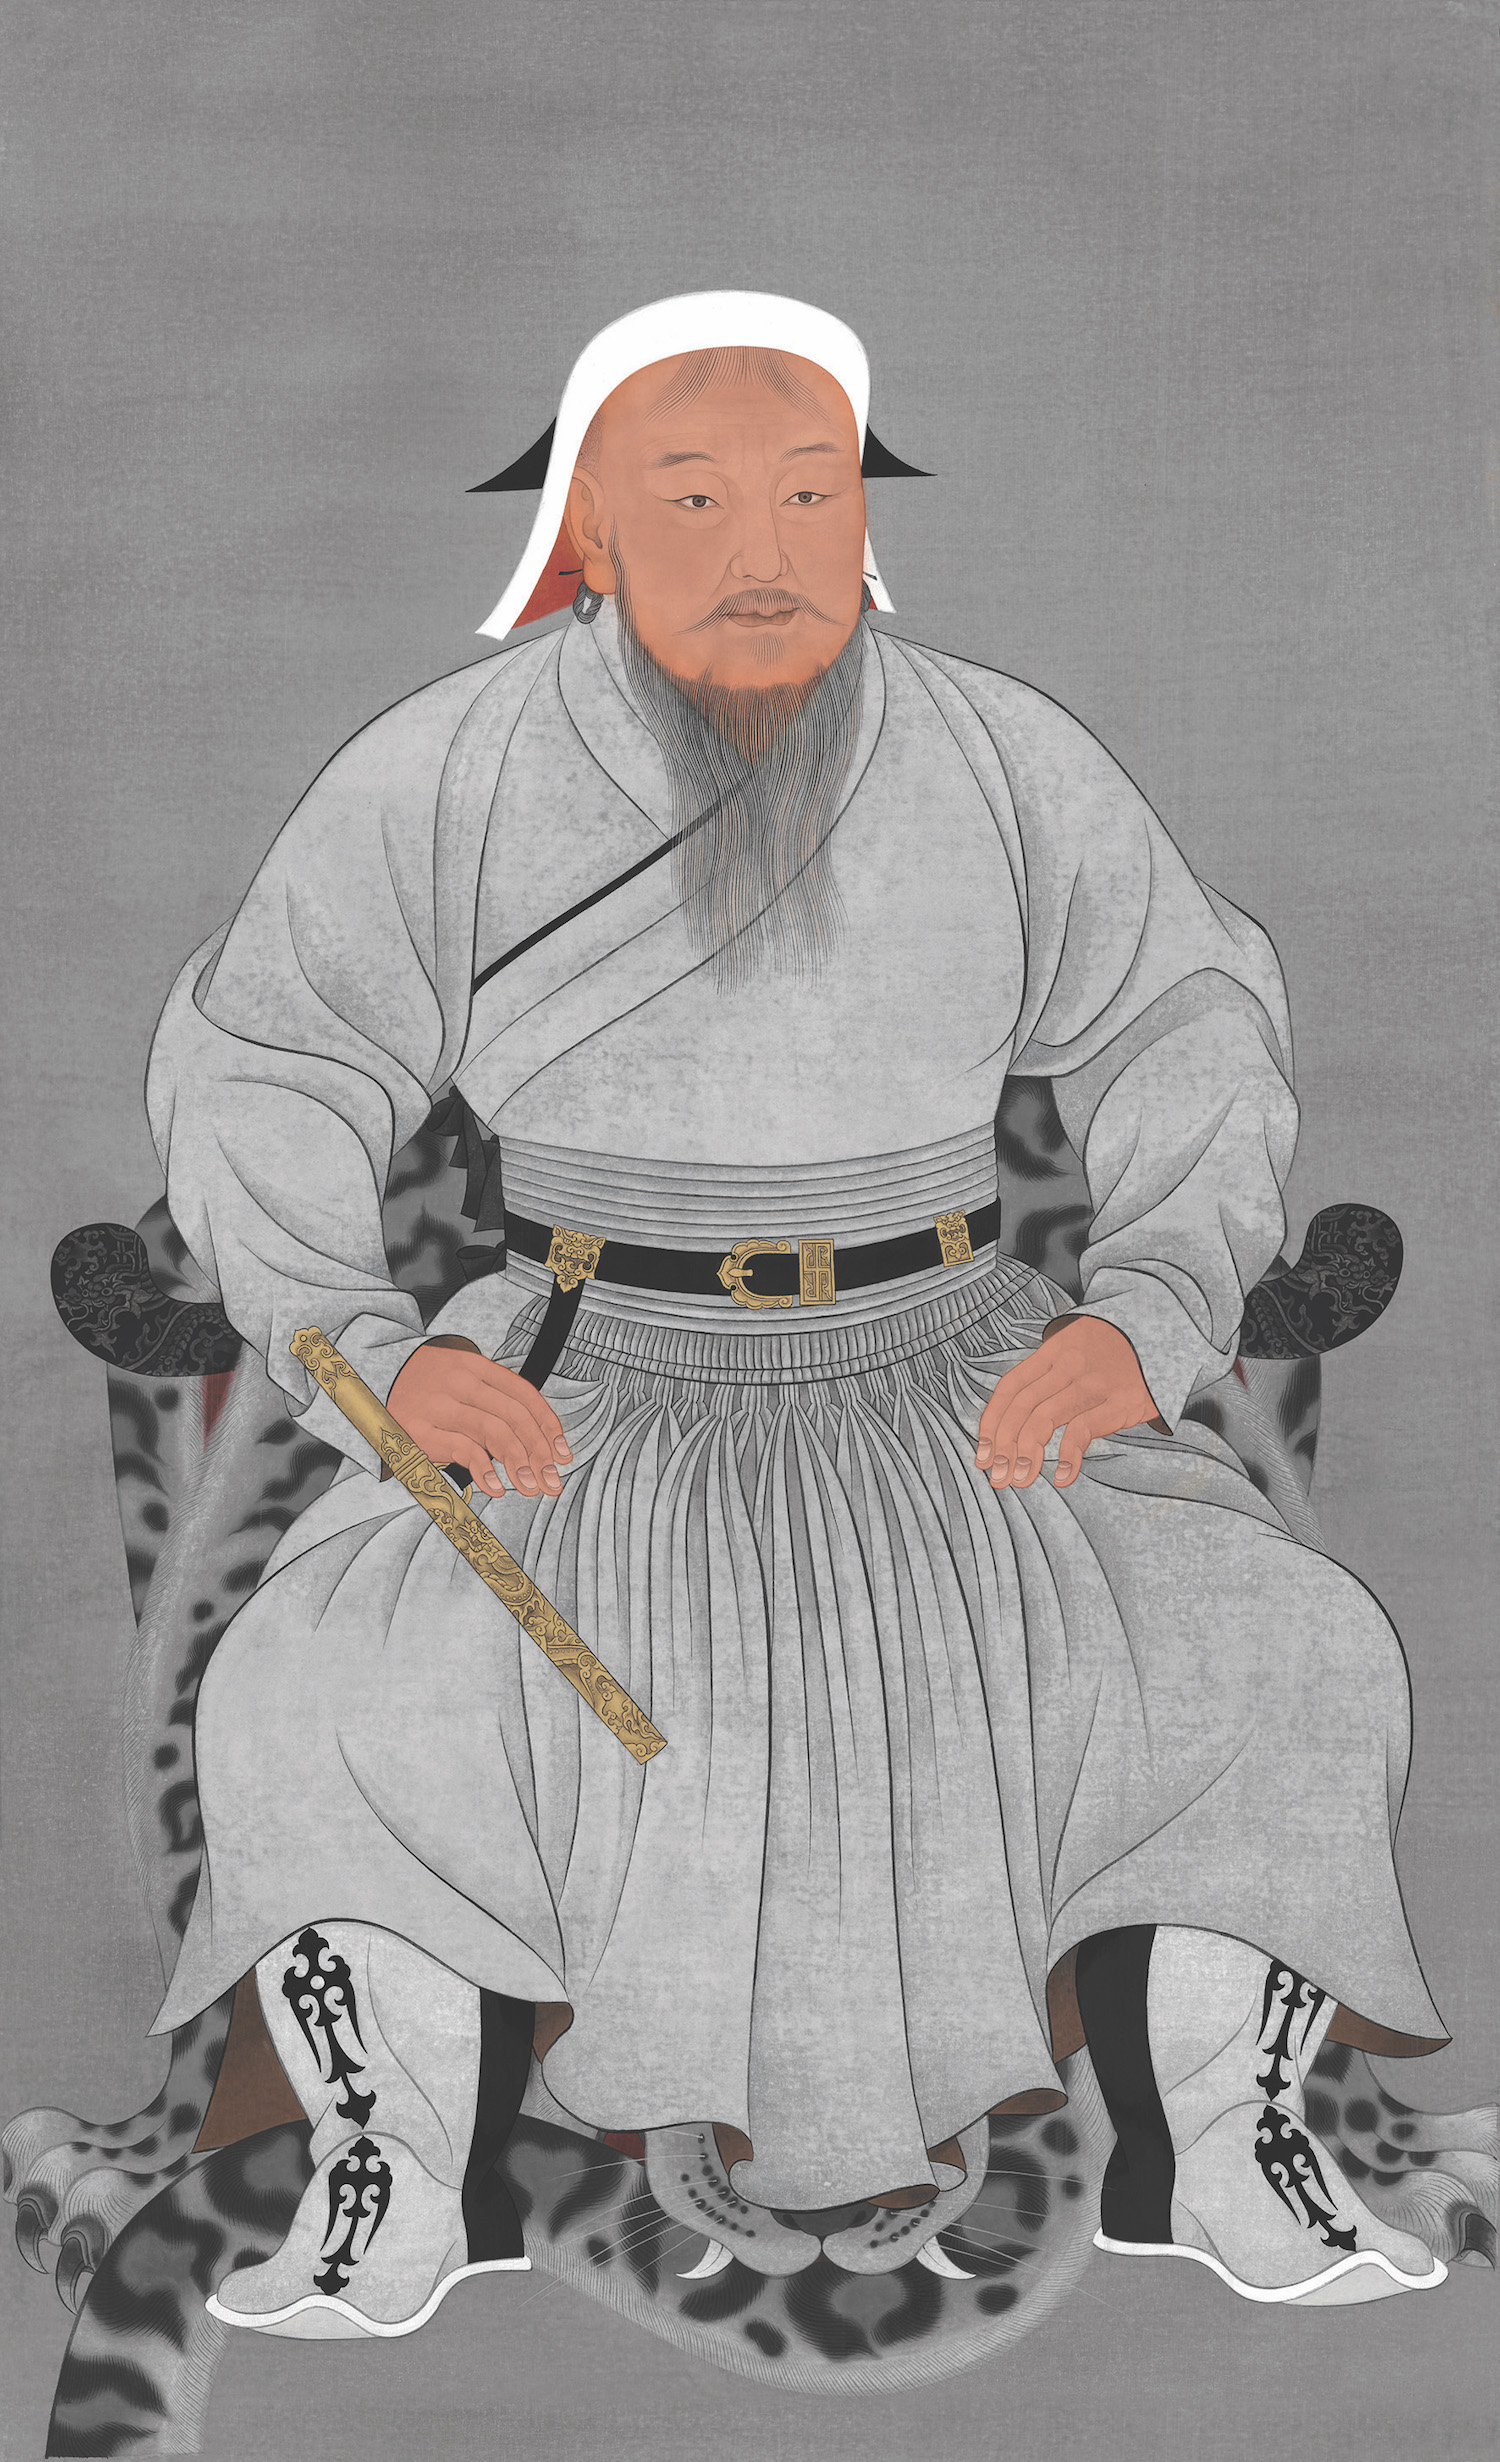 Portrait de Gengis Khan réalisé par les équipes du tout jeune musée Chinggis Khaan de Mongolie à partir de « représentations » du XIVe siècle. Photo service de presse. © Oulan-Bator, Chinggis Khaan National Museum